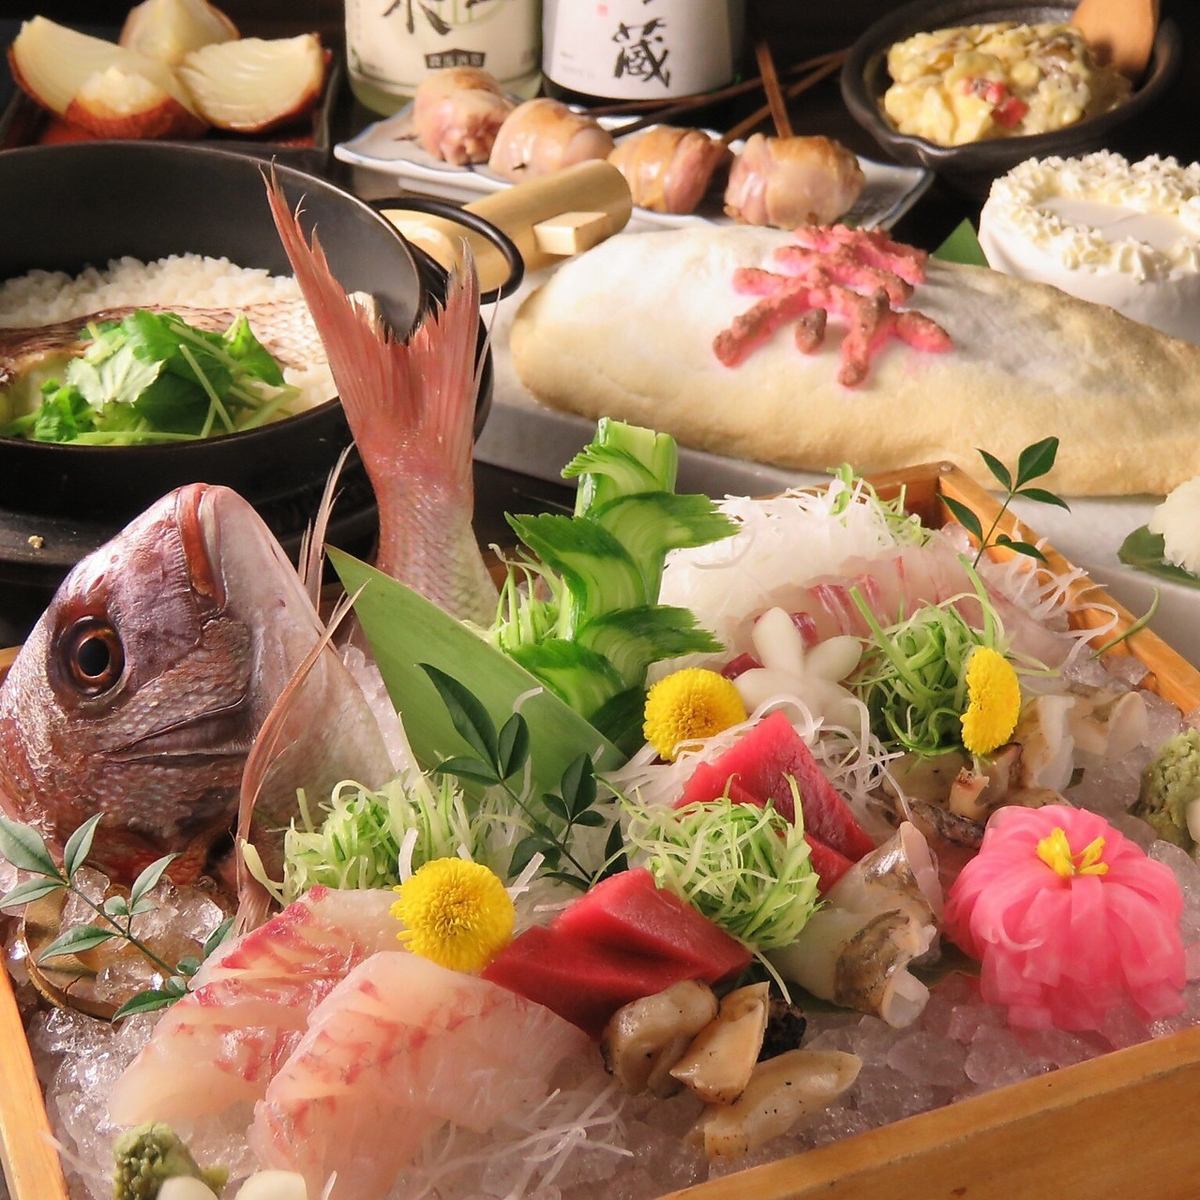 包房◎新的用鹽鍋用木槌敲打的烤鯛魚150分鐘無限暢飲套餐6,000日元